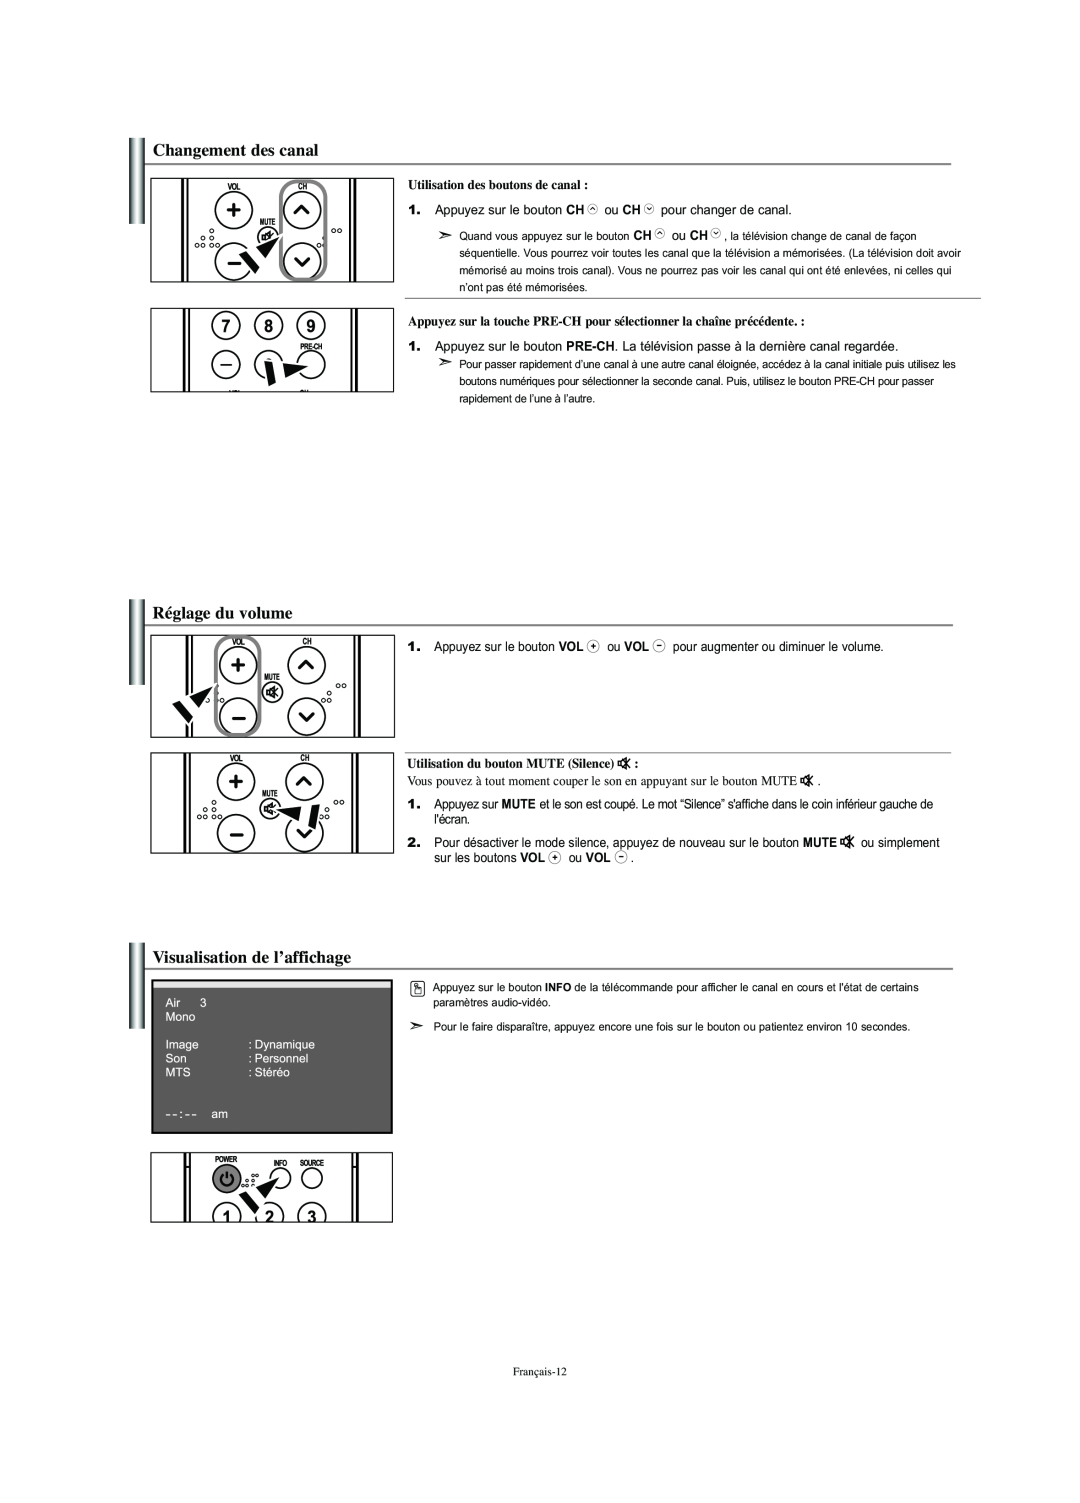 Samsung LN-S2341W Changement des canal, Réglage du volume, Visualisation de l’affichage, Utilisation des boutons de canal 